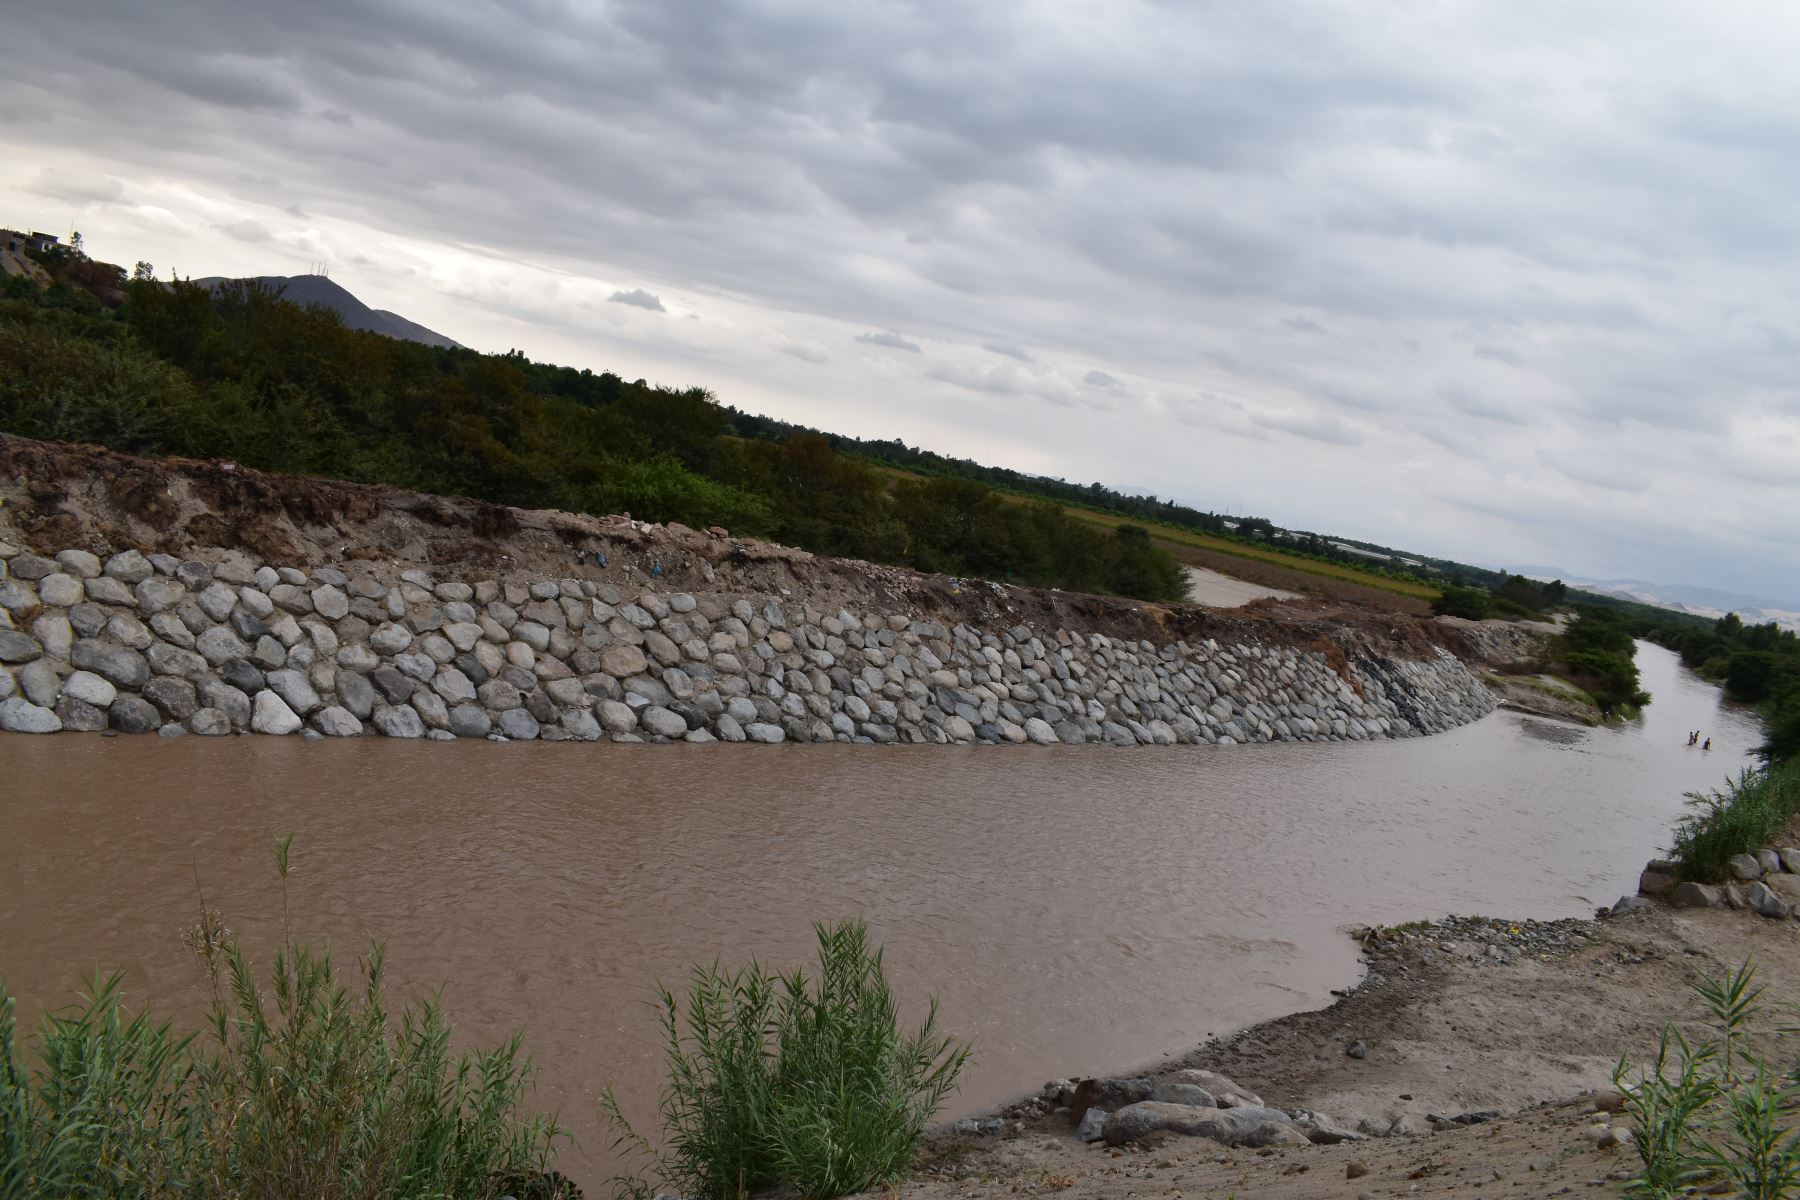 Los ríos Ica y Pisco, en la región Ica, registran incrementos significativos en sus caudales en estos últimos días, debido a las intensas lluvias que se presentaron principalmente en las partes altas de las cuencas mencionadas, informó el Servicio Nacional de Meteorología e Hidrología (Senamhi). ANDINA/Difusión